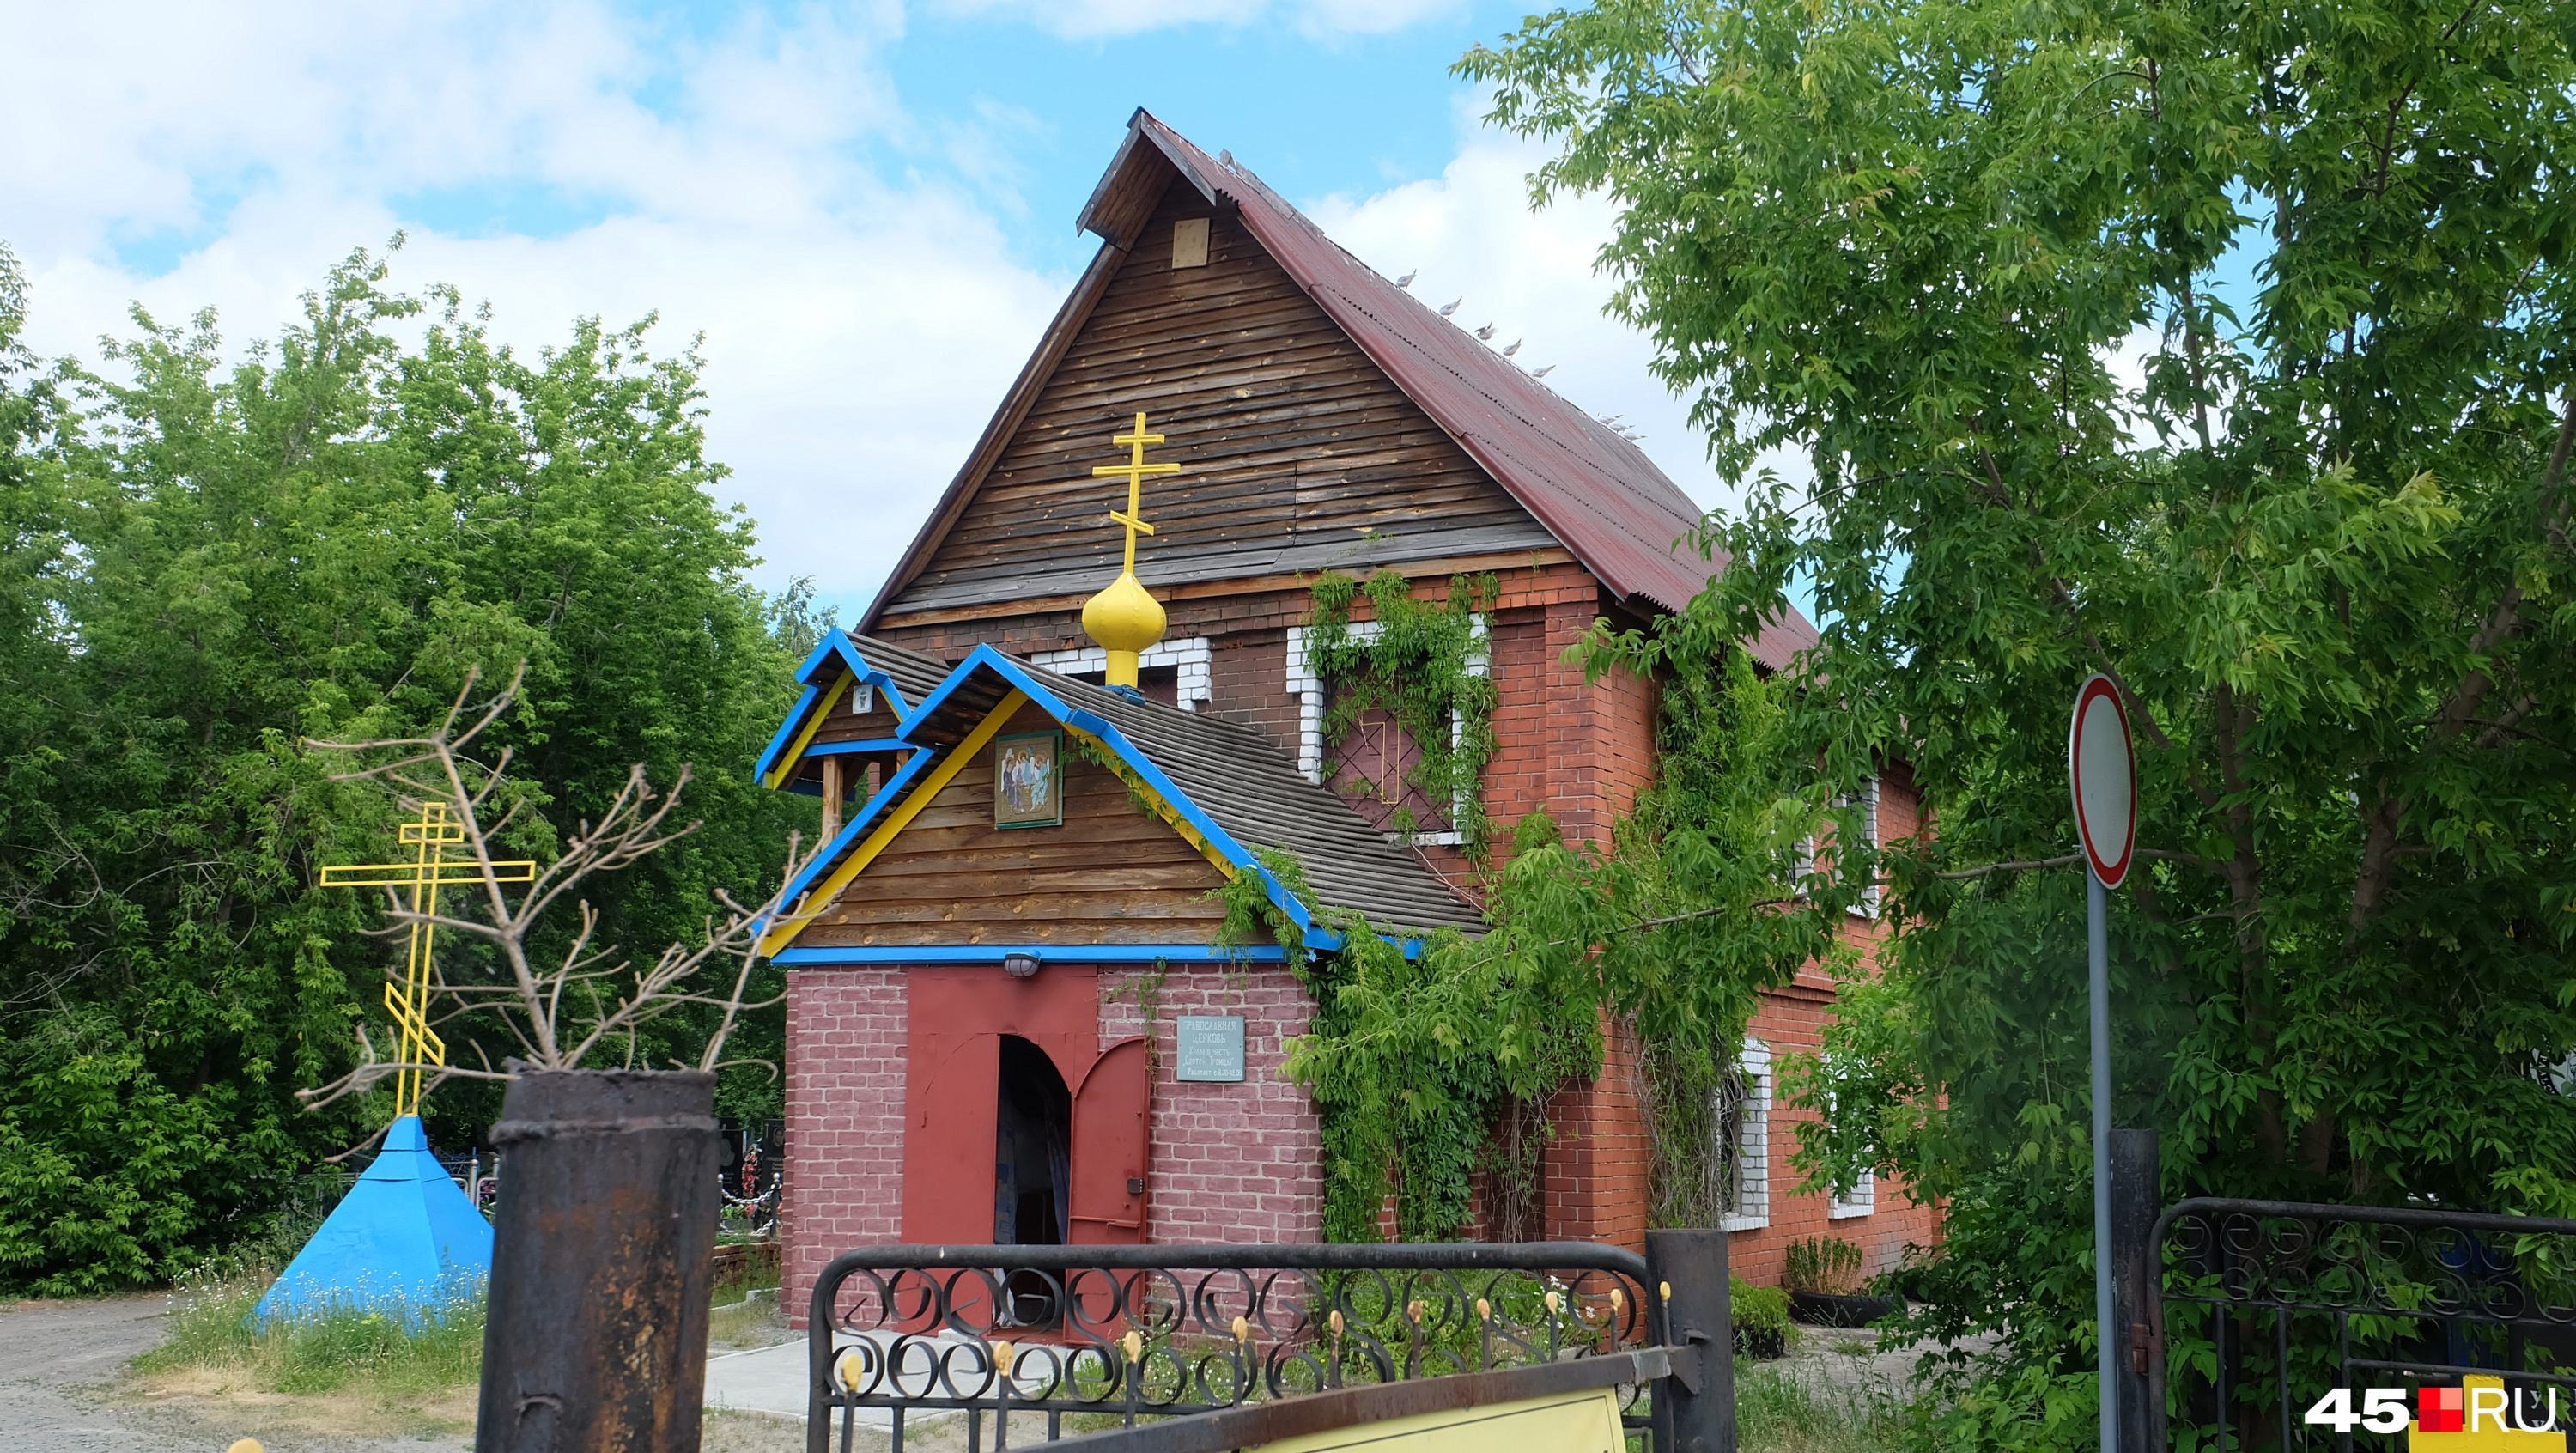 Небольшая церквушка на входе на территорию известного городского кладбища, до недавнего времени была единственной церковью УПЦ Киевского патриархата